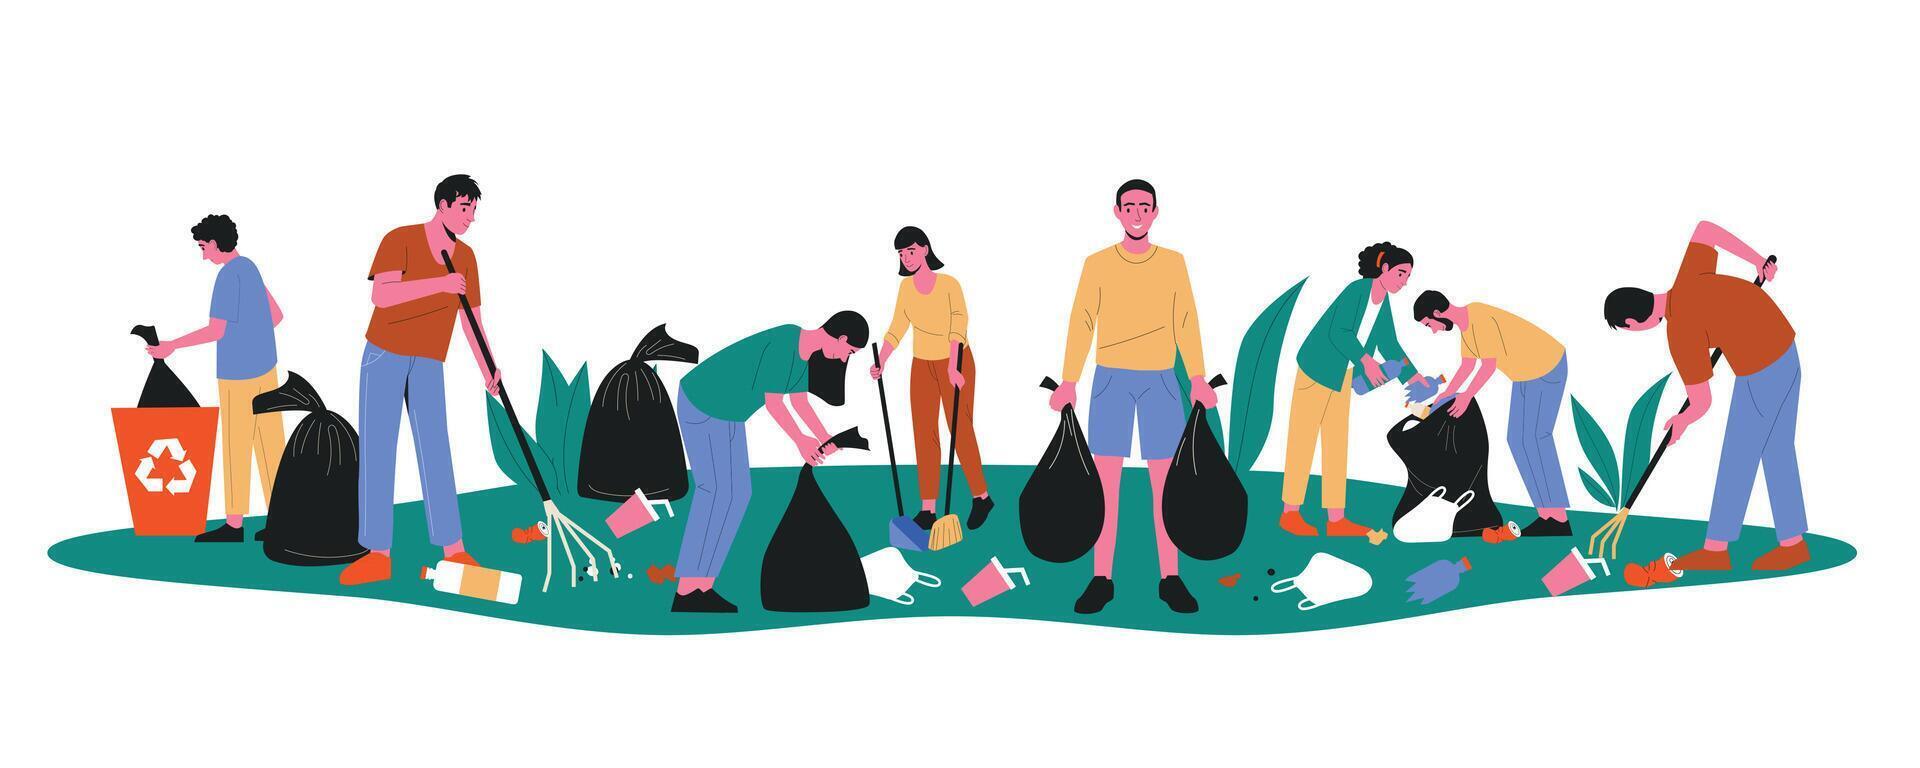 voluntarios limpieza arriba parques dibujos animados personas caracteres coleccionar camada cosecha el plastico residuos rastrillar basura, eco voluntario activista. vector plano ilustración